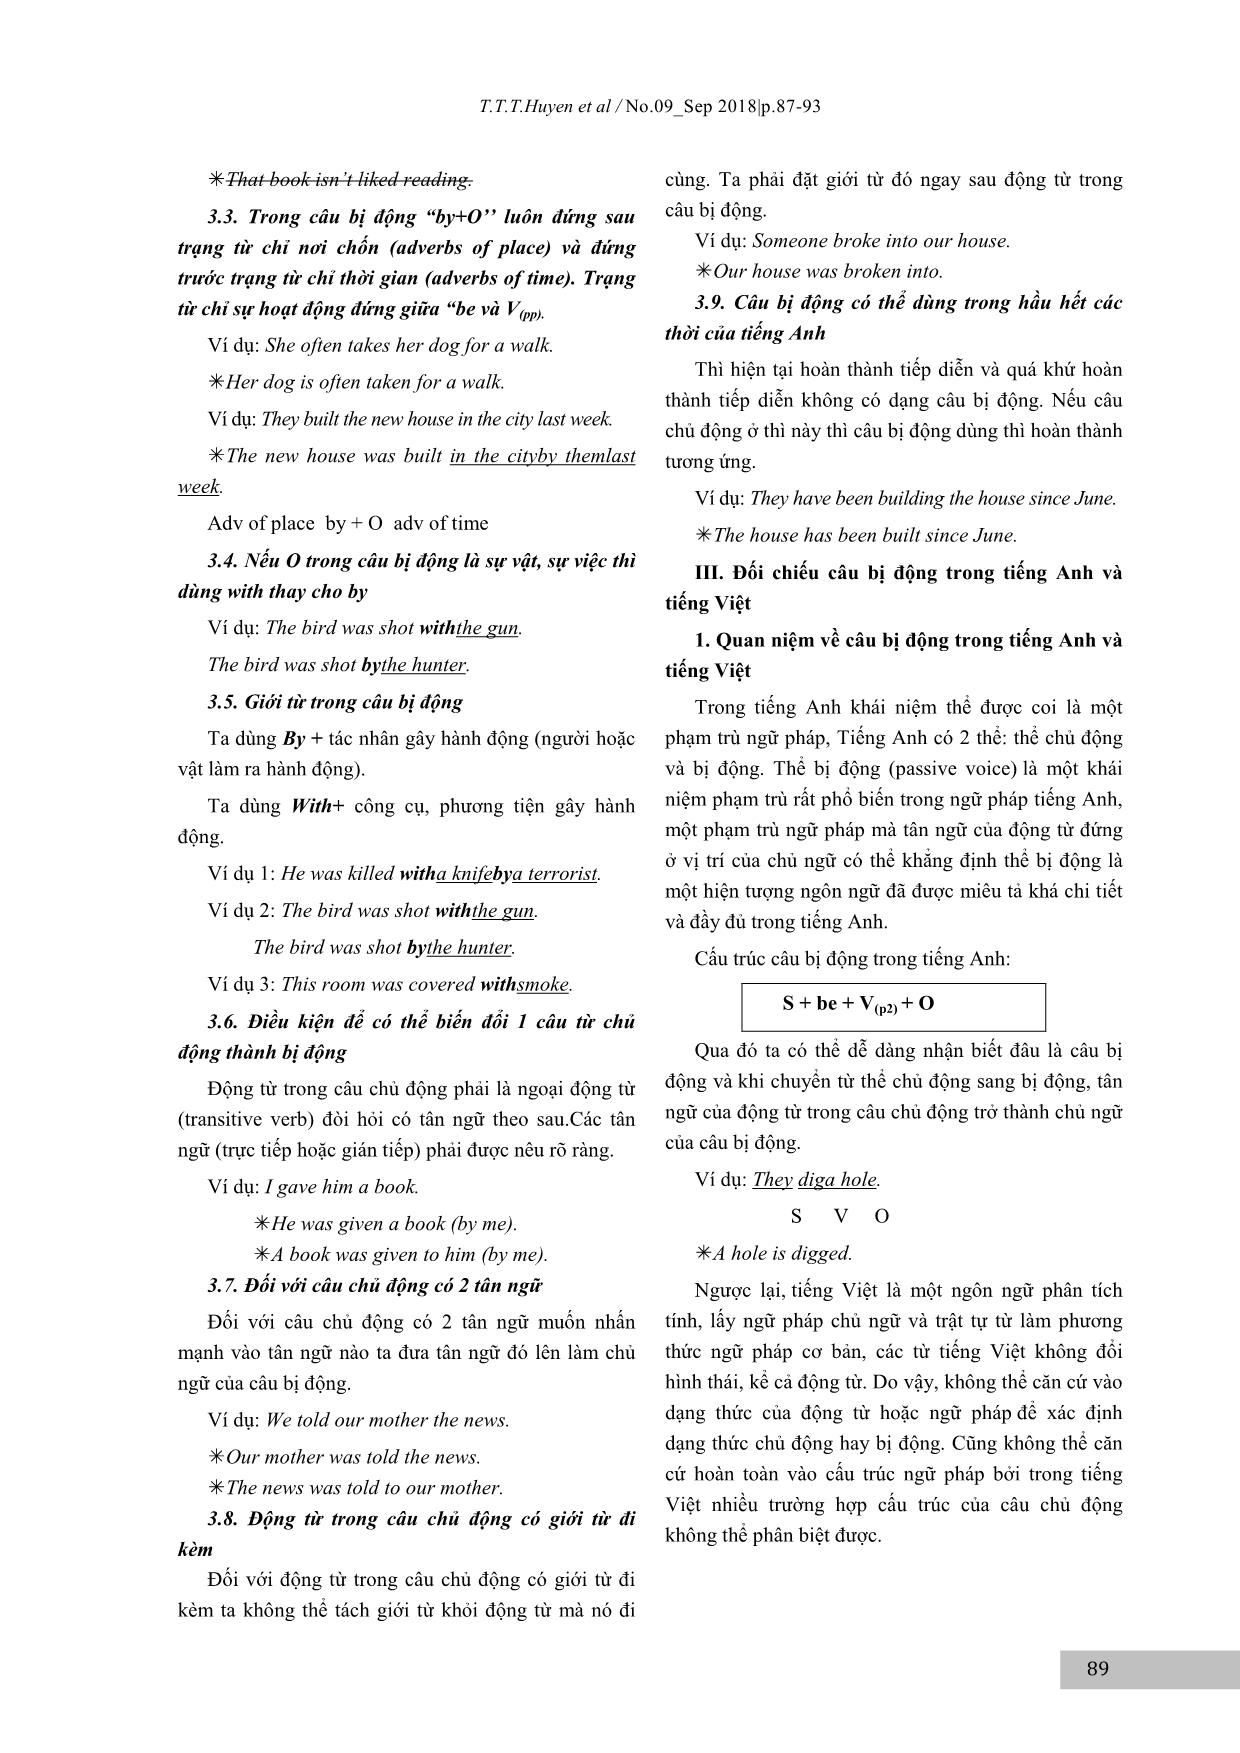 Cách sử dụng câu chủ động và câu bị động trong tiếng Anh trang 3